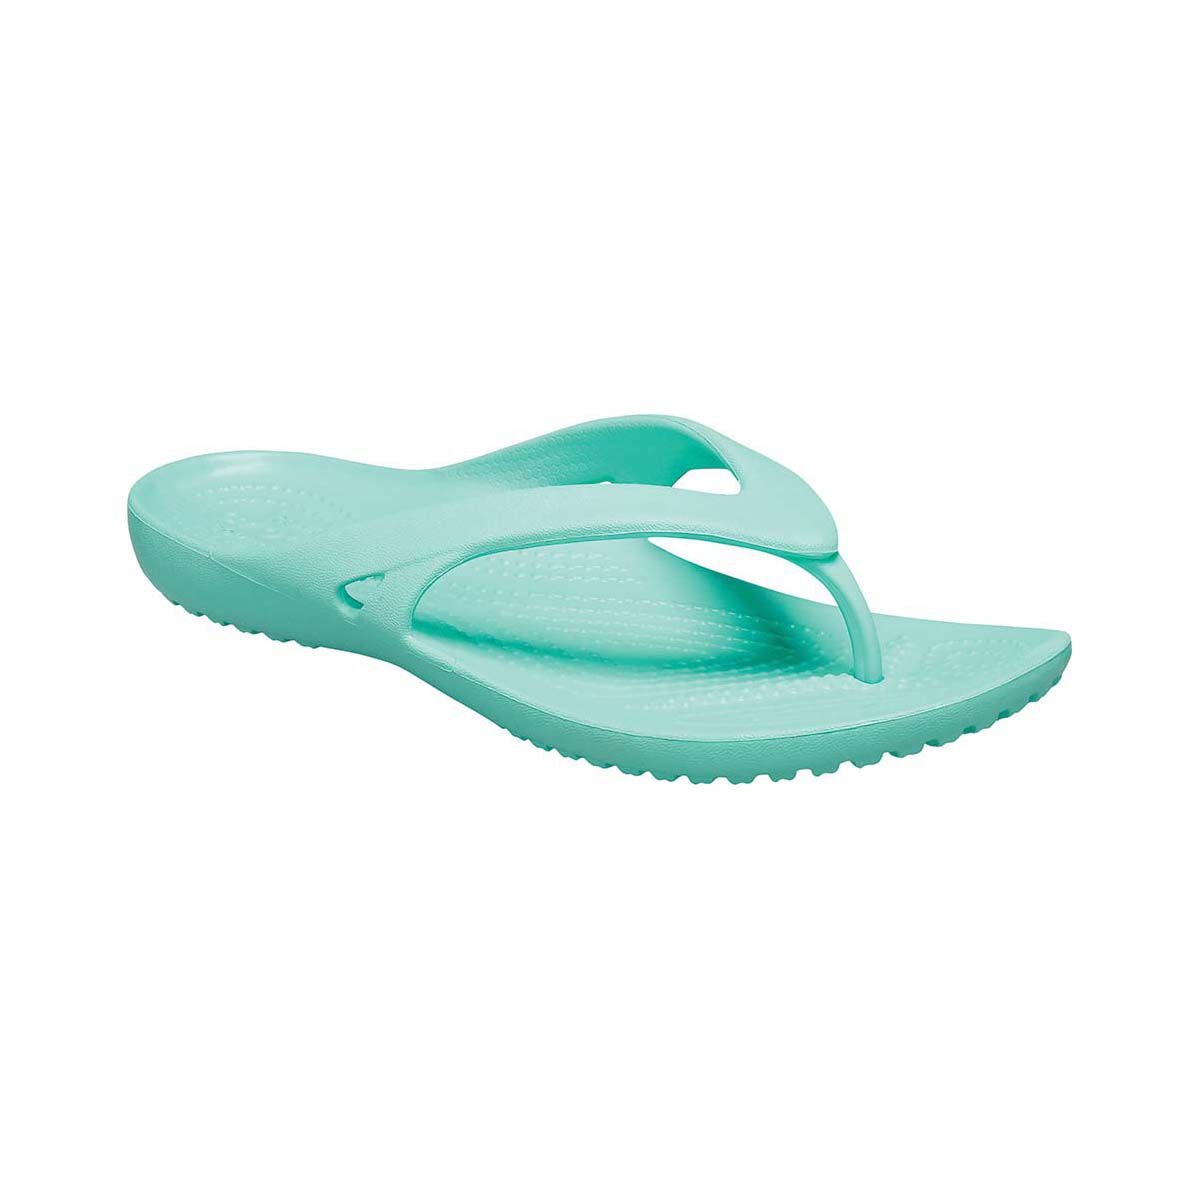 Crocs Kadee II Women's Flip Flops Pistachio W6 | BCF